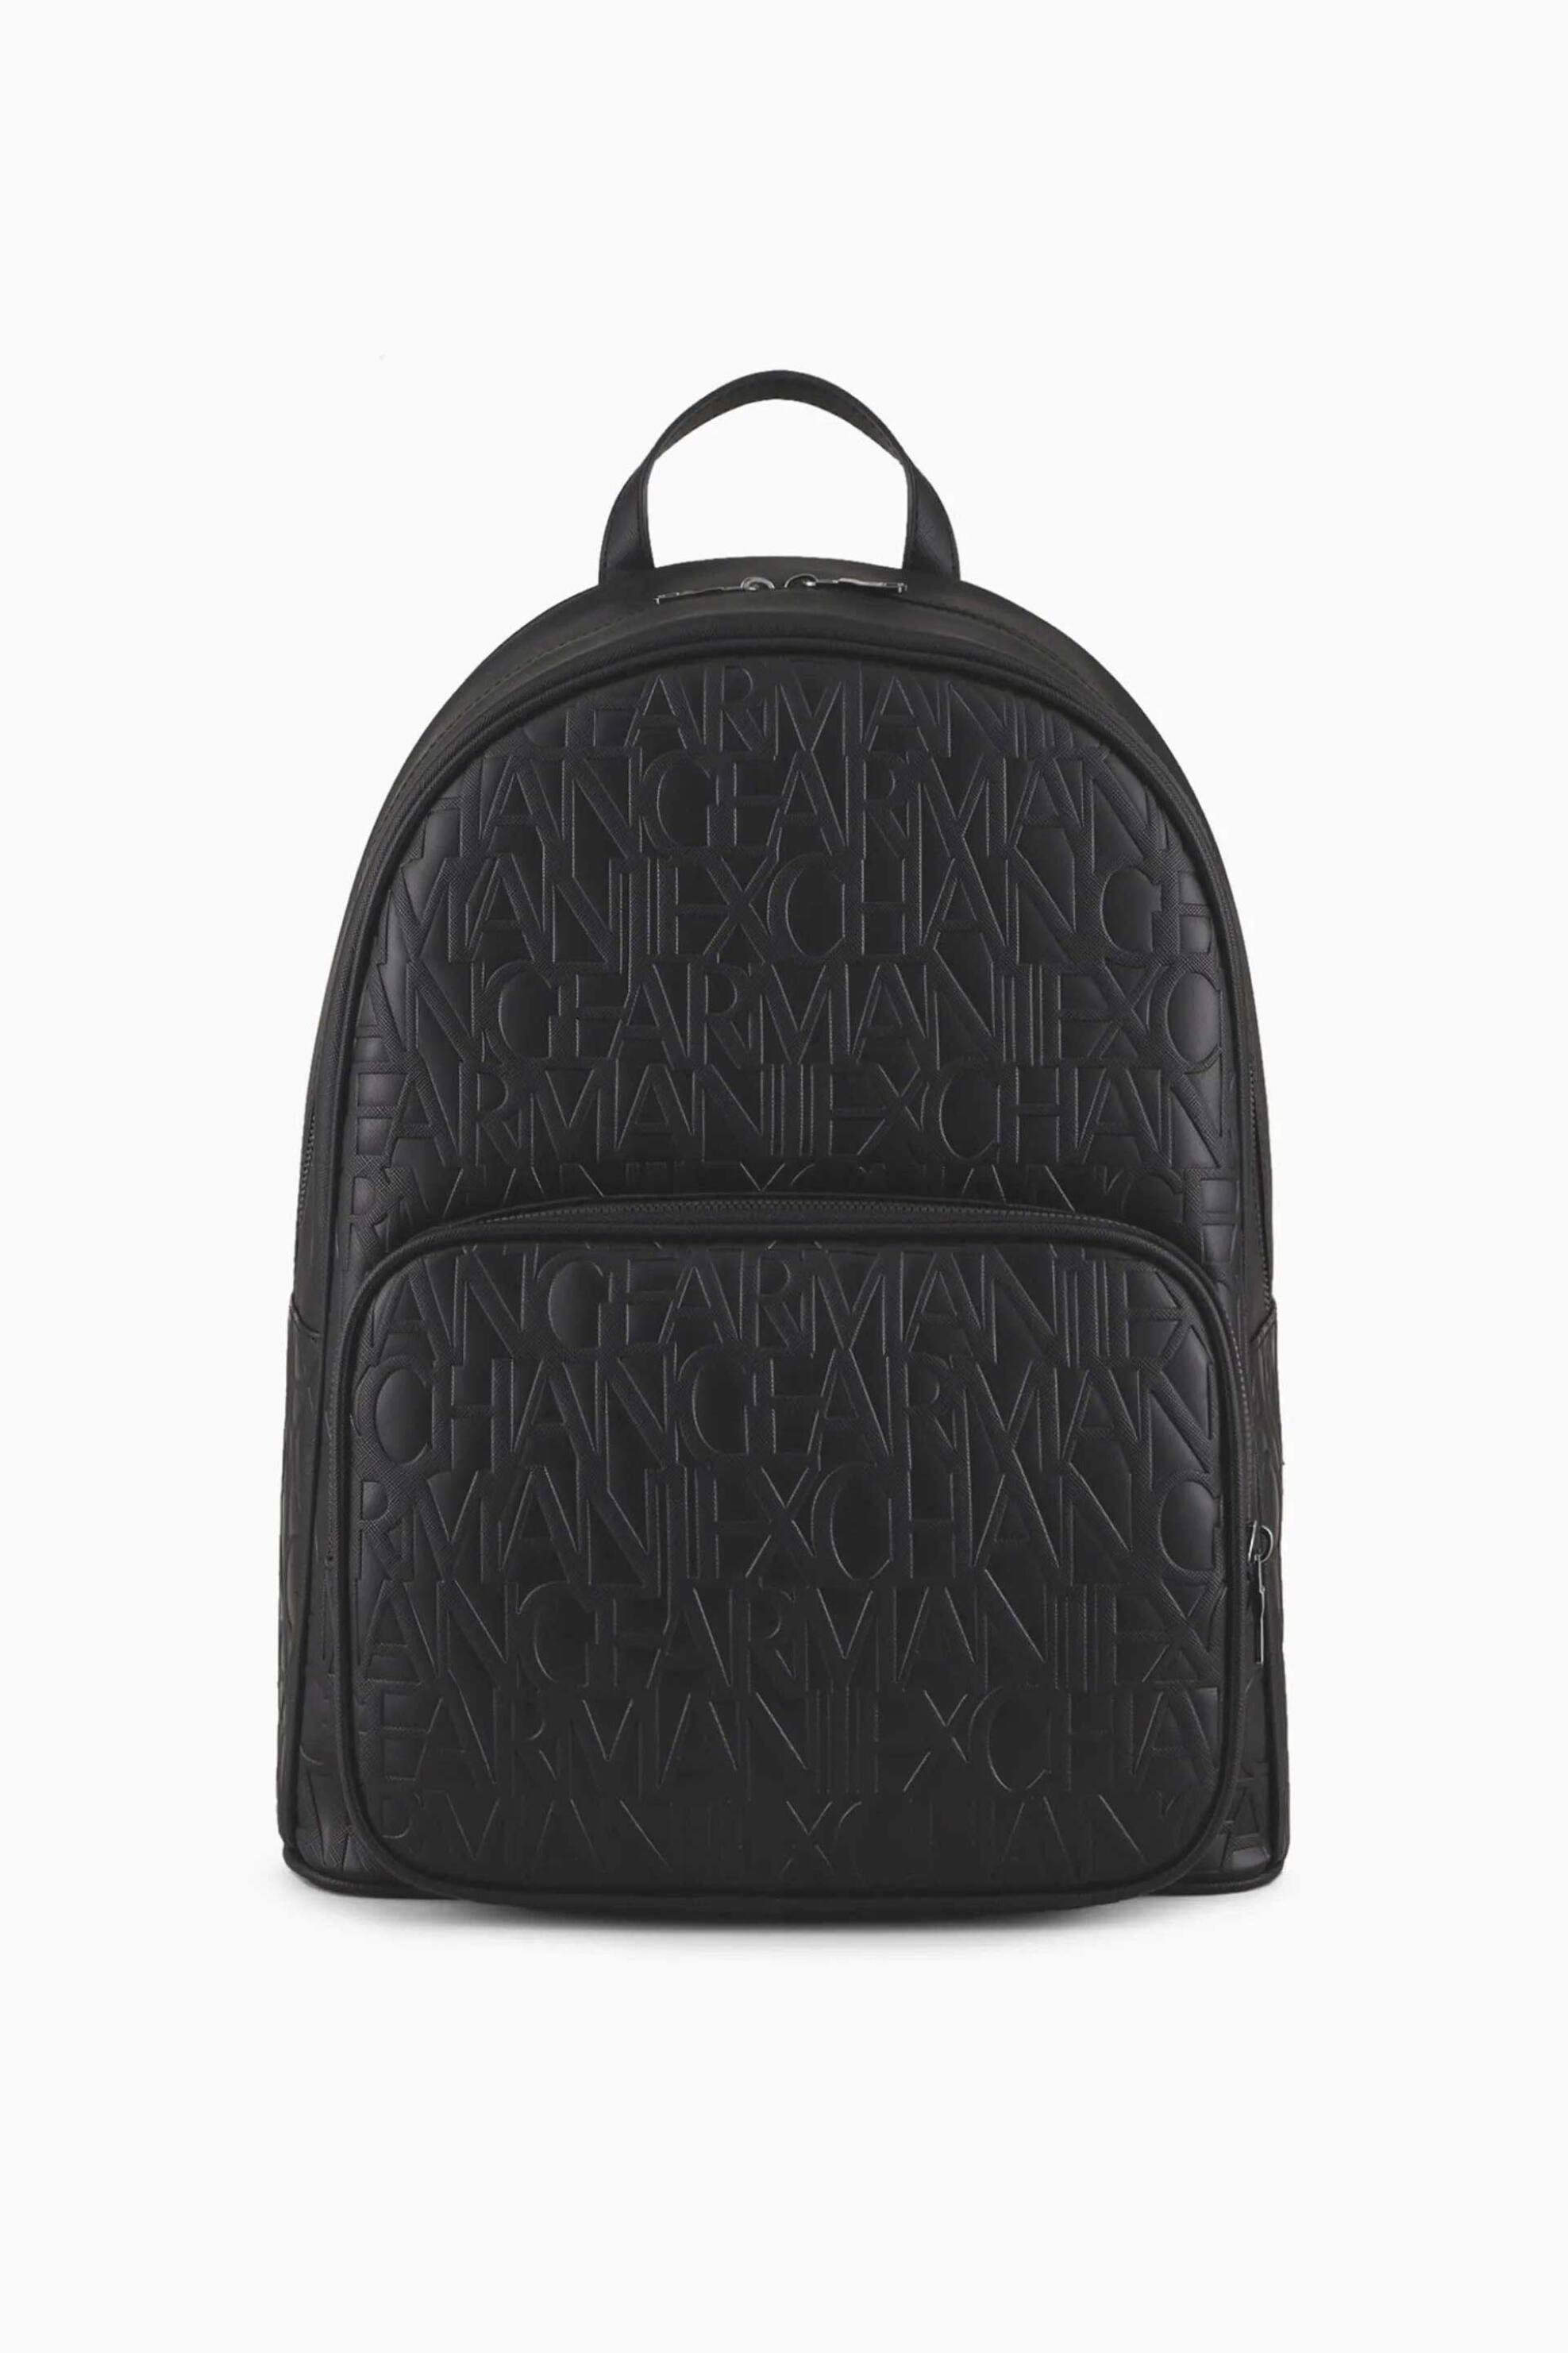 Ανδρική Μόδα > Ανδρικές Τσάντες > Ανδρικά Σακίδια & Backpacks Armani Exchange ανδρικό backpack με all-over ανάγλυφο logo - 952510CC838 Μαύρο